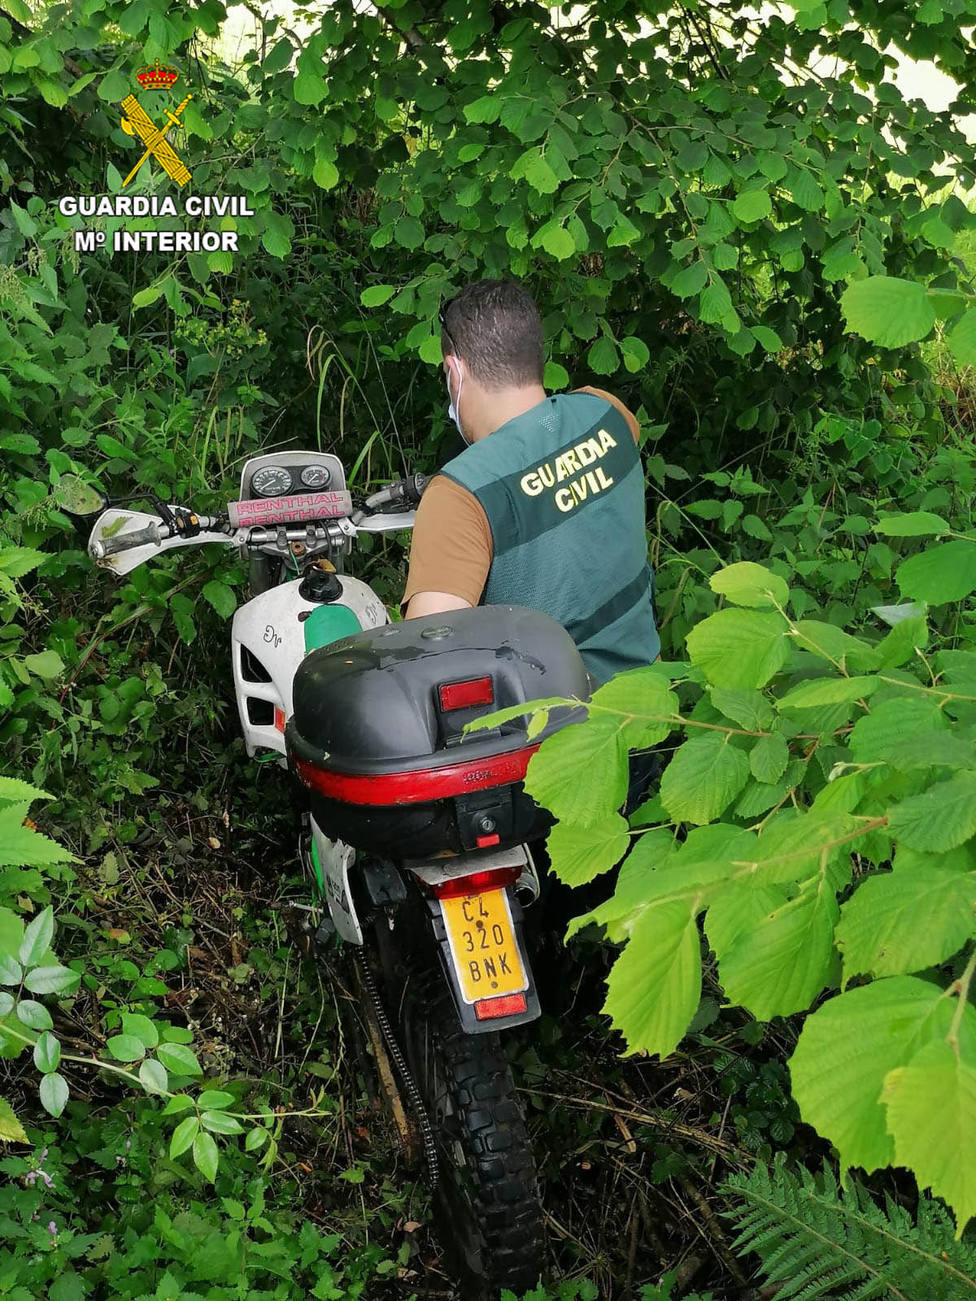 La motocicleta robada en Colombres fue localizada entre unos matorrales próximos a la localidad de La Franca